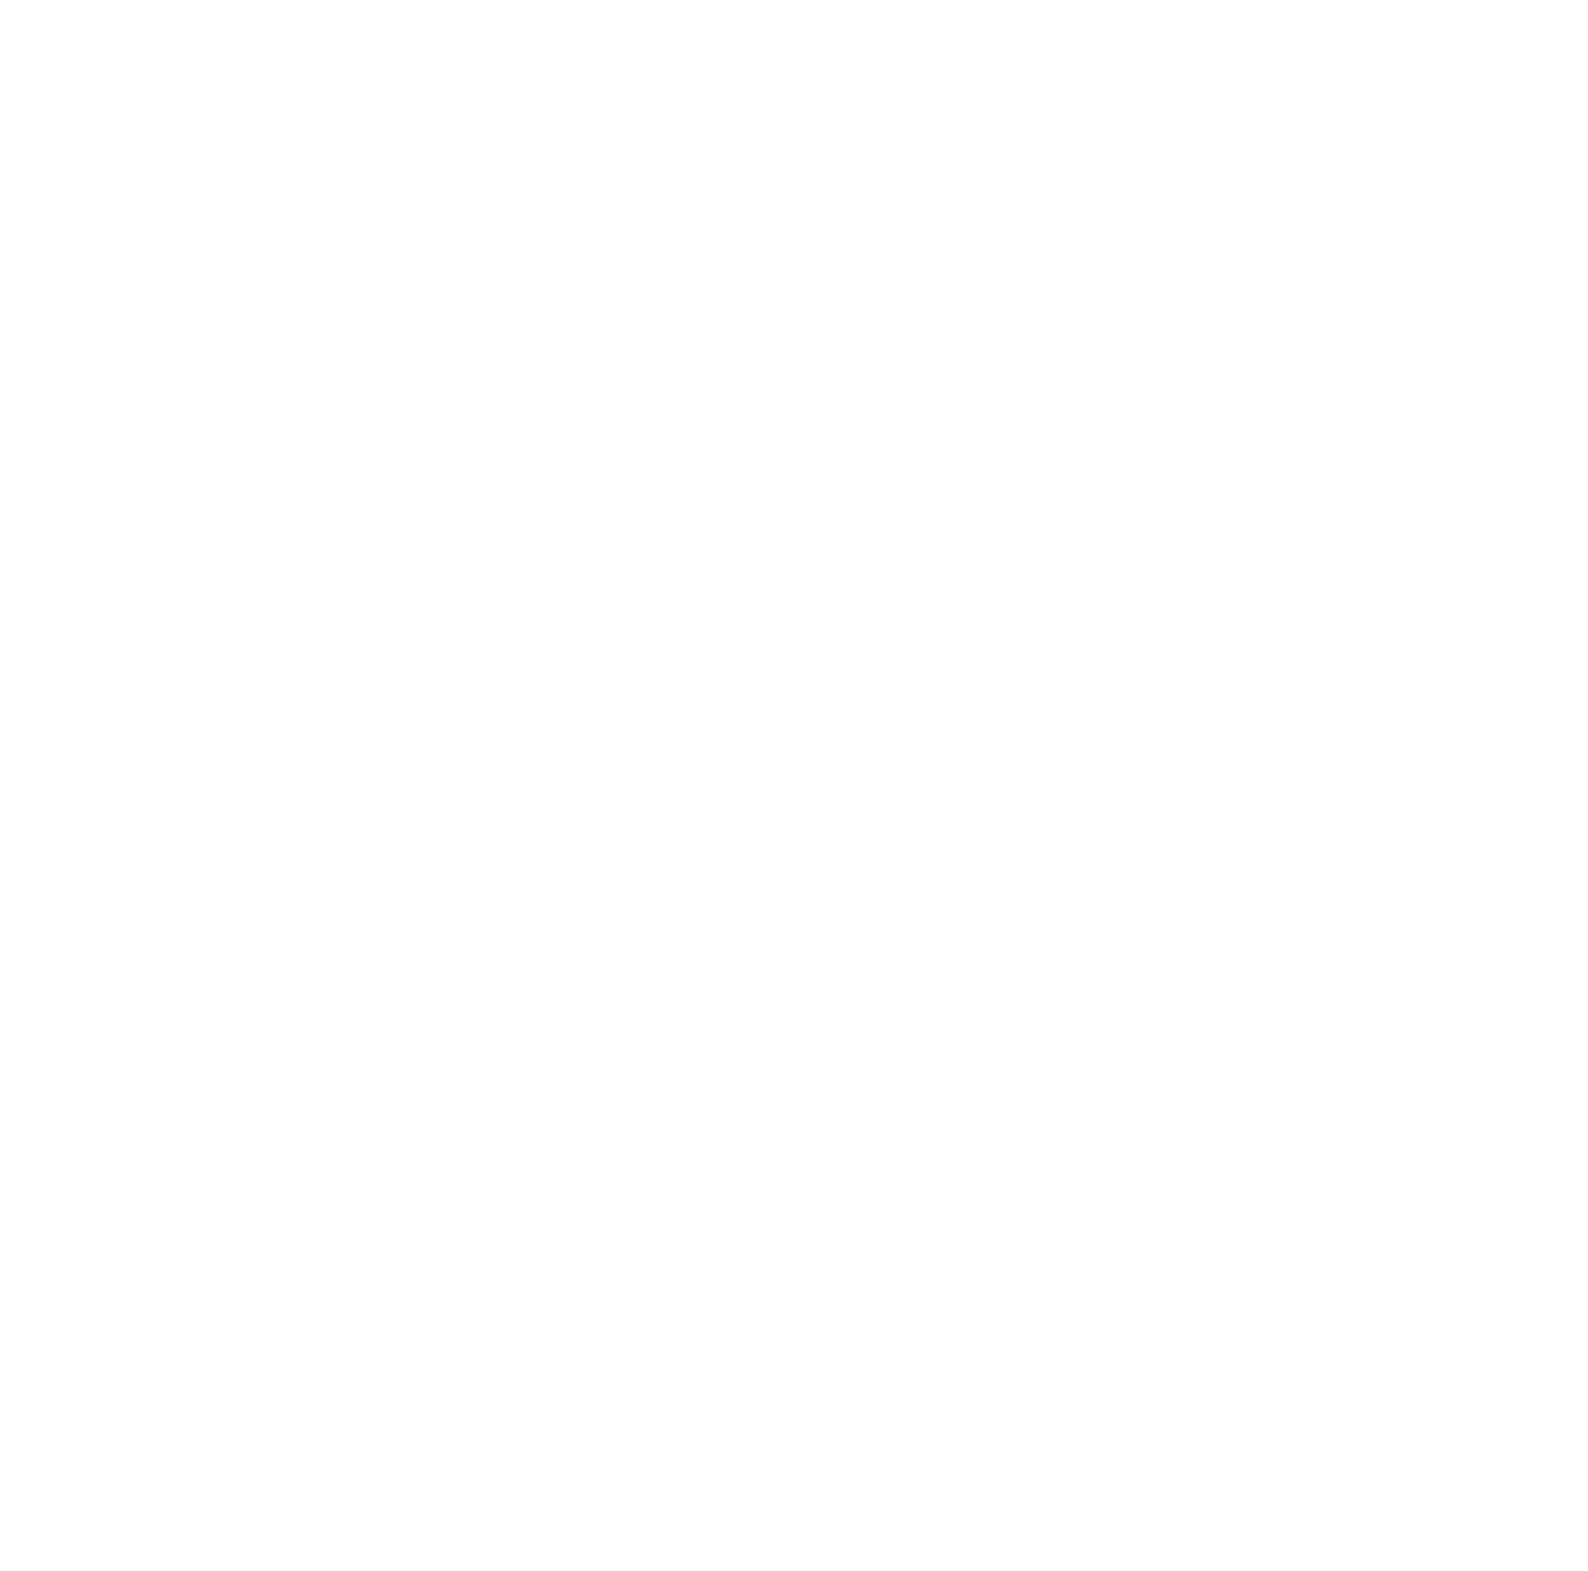 Enghouse Systems logo pour fonds sombres (PNG transparent)